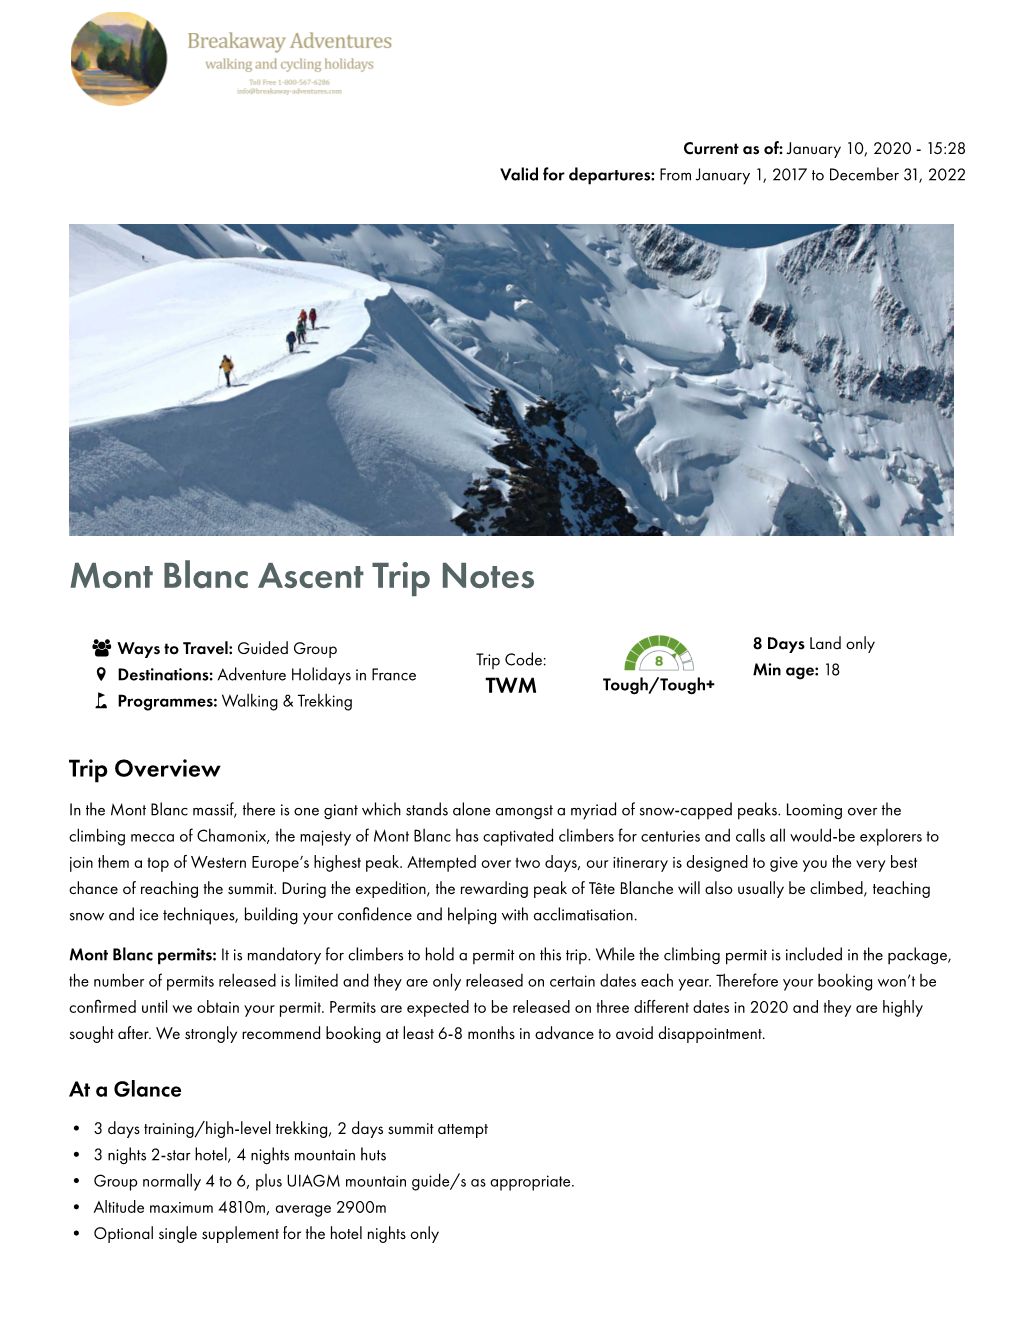 Mont Blanc Ascent Trip Notes